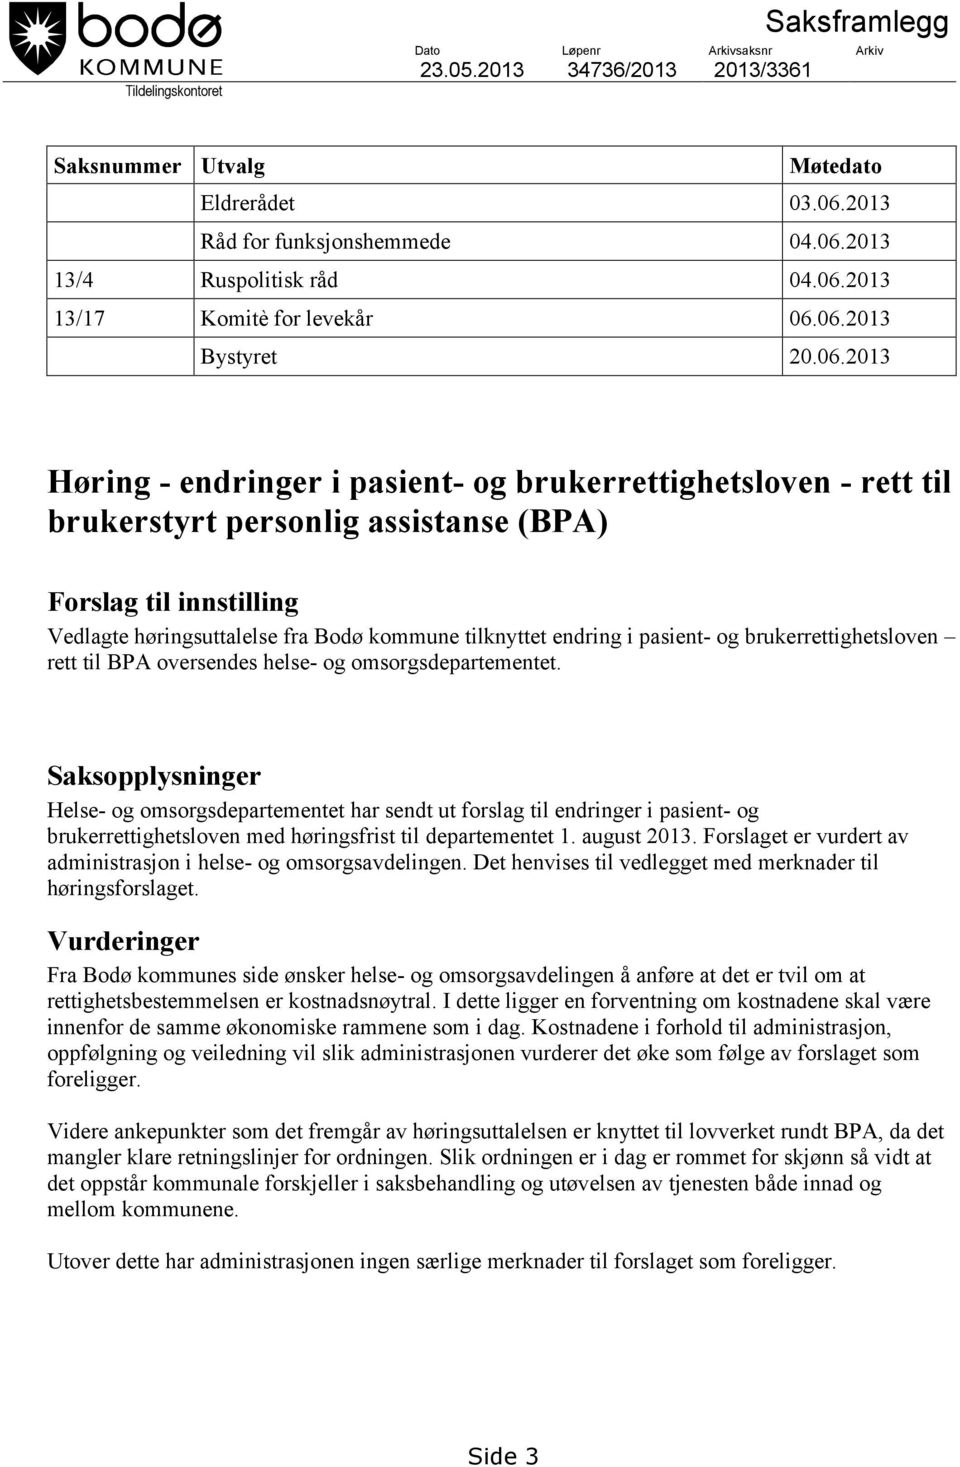 Vedlagte høringsuttalelse fra Bodø kommune tilknyttet endring i pasient- og brukerrettighetsloven rett til BPA oversendes helse- og omsorgsdepartementet.